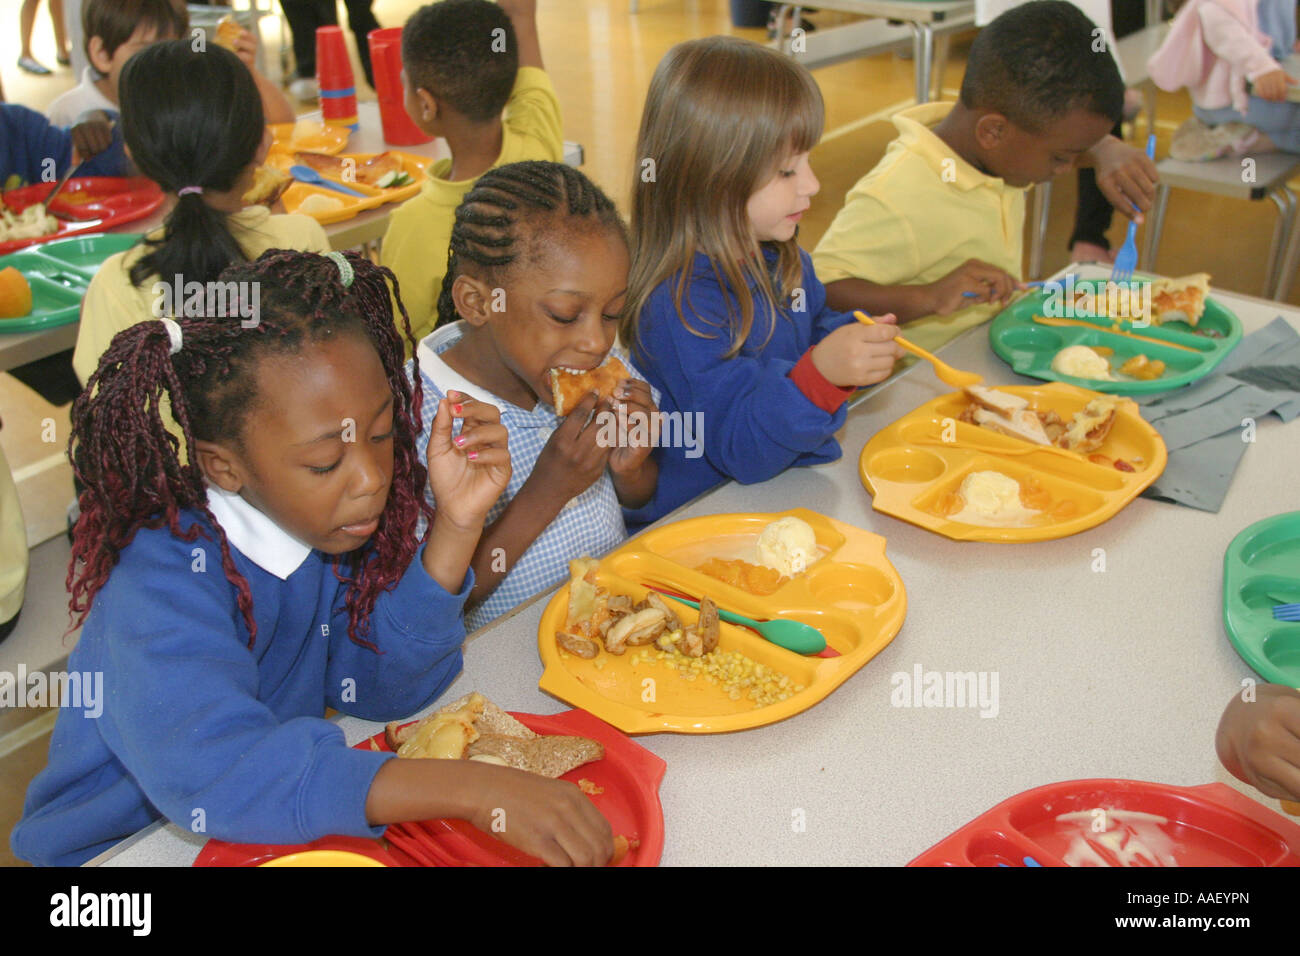 https://c8.alamy.com/comp/AAEYPN/primary-school-canteen-with-children-eating-lunch-AAEYPN.jpg